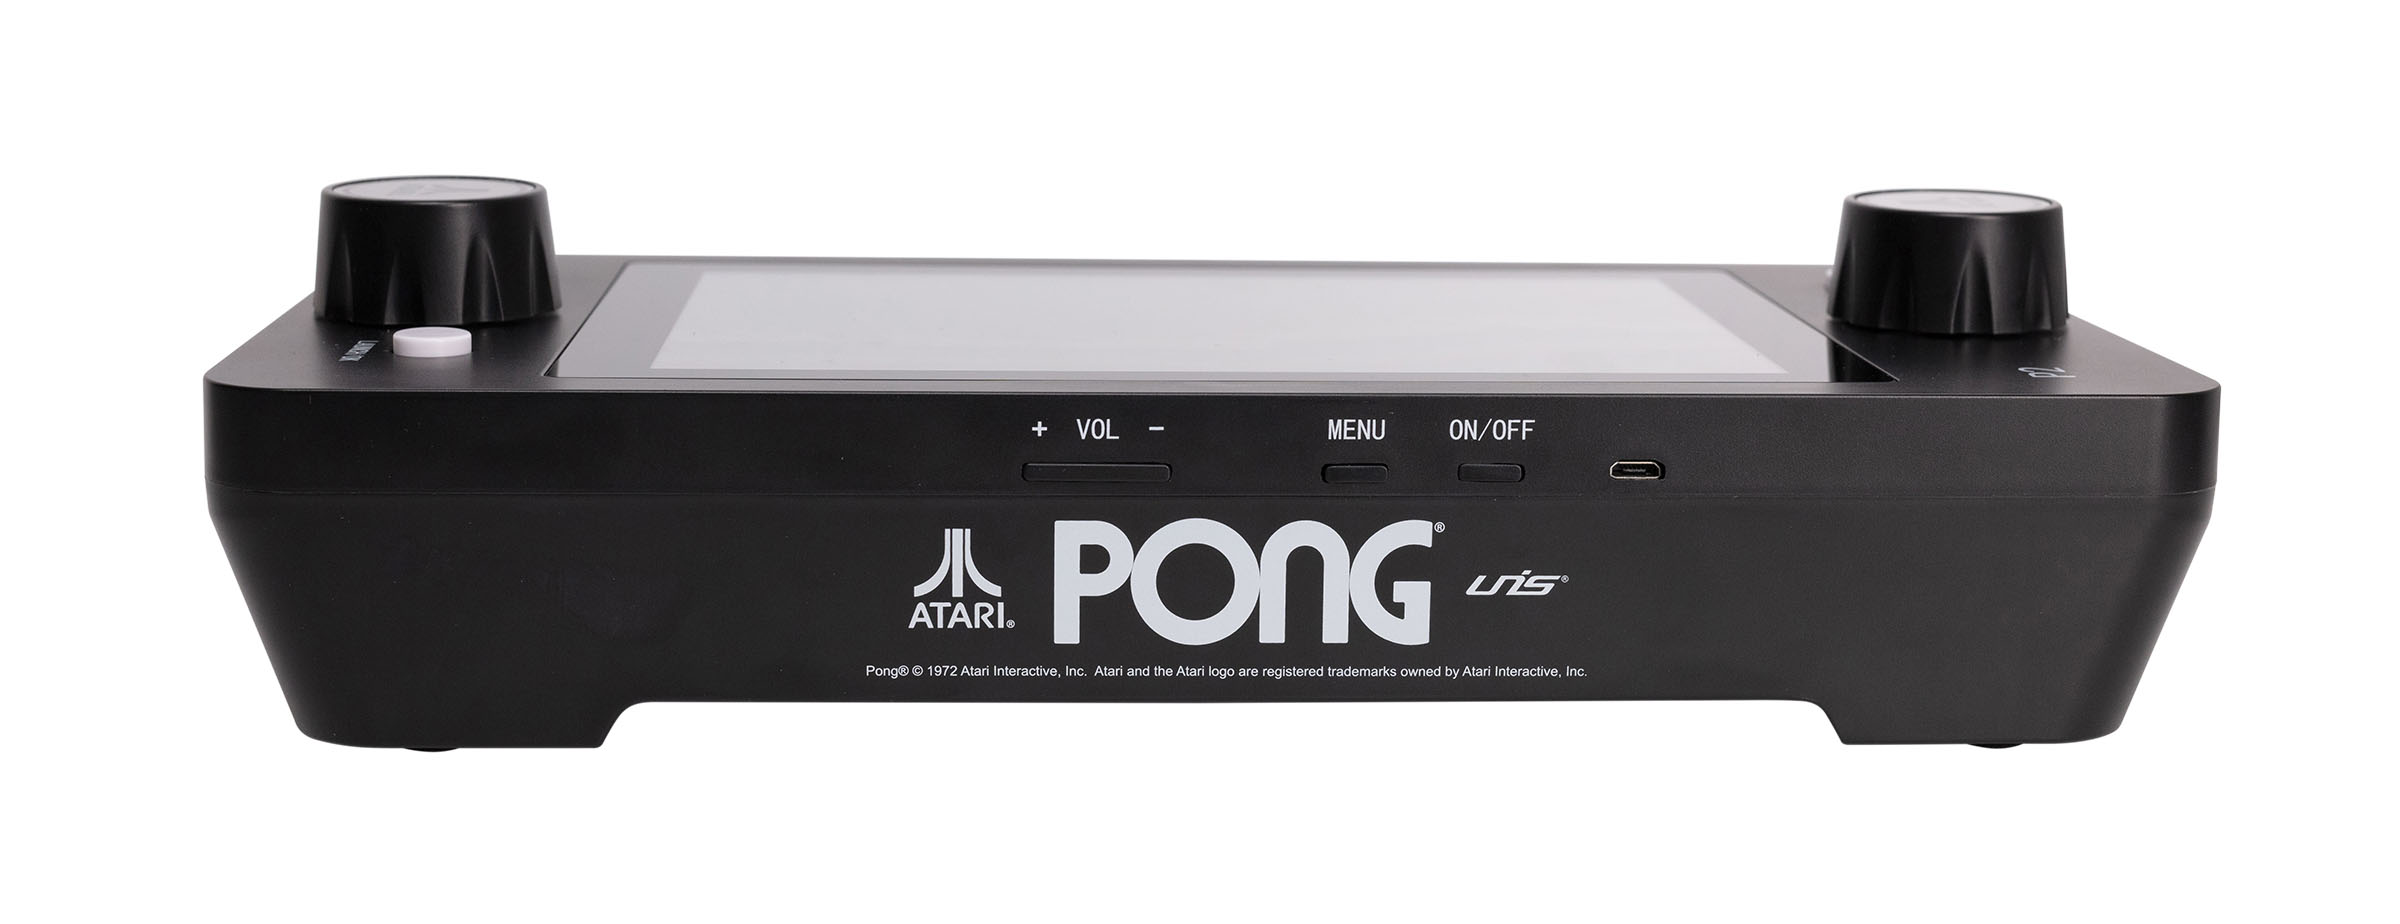 Mini PONG Jr, Atari